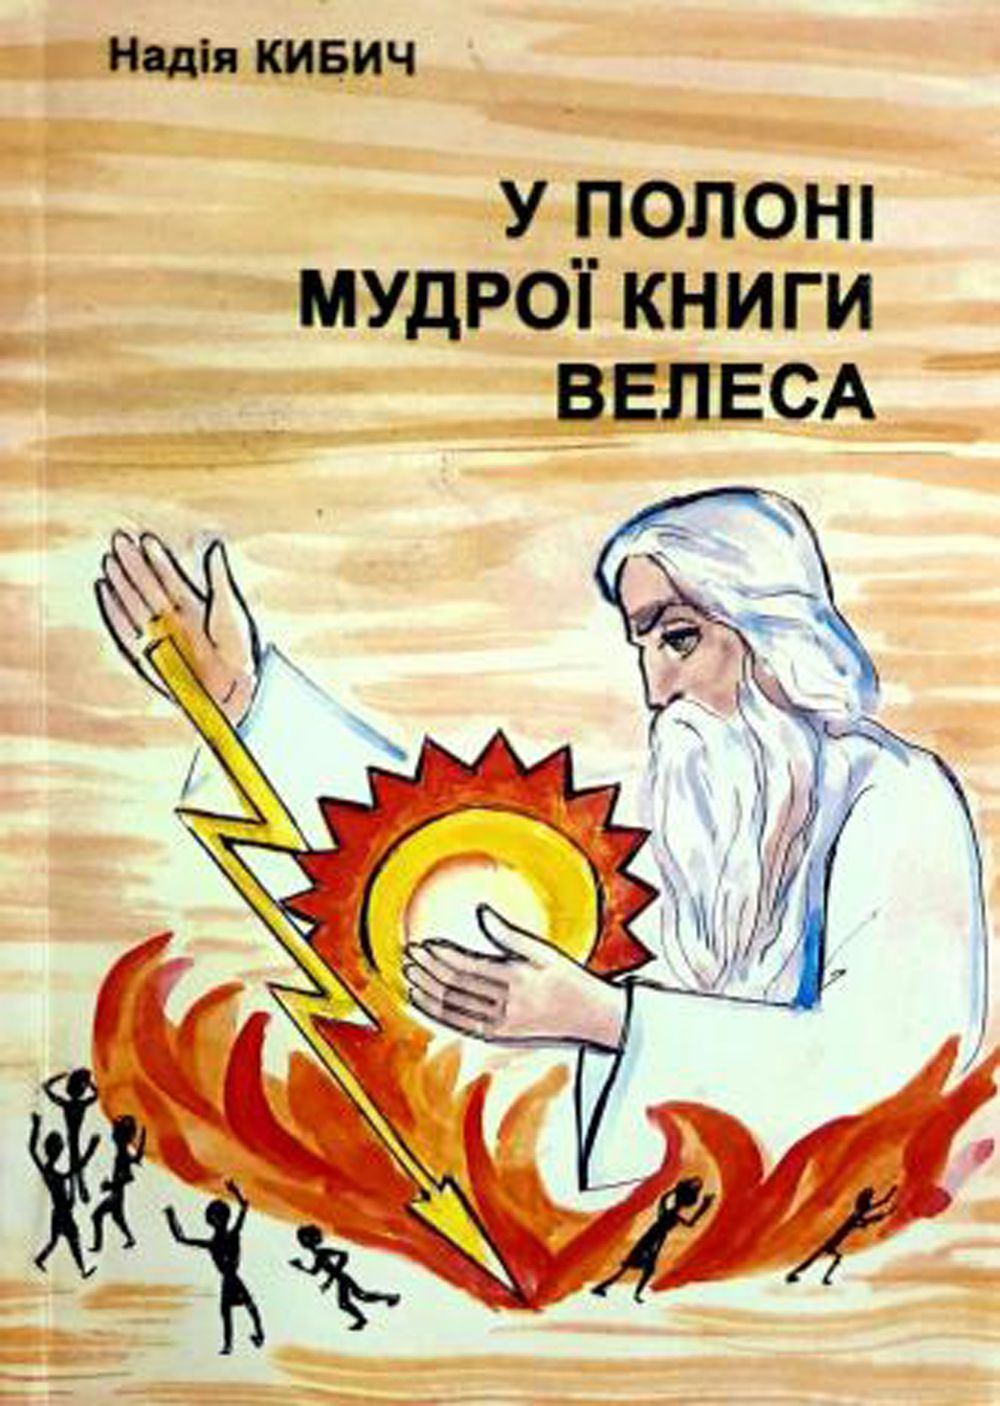 «Велесова книга»: що відомо про найстаріший український літопис дохристиянської доби